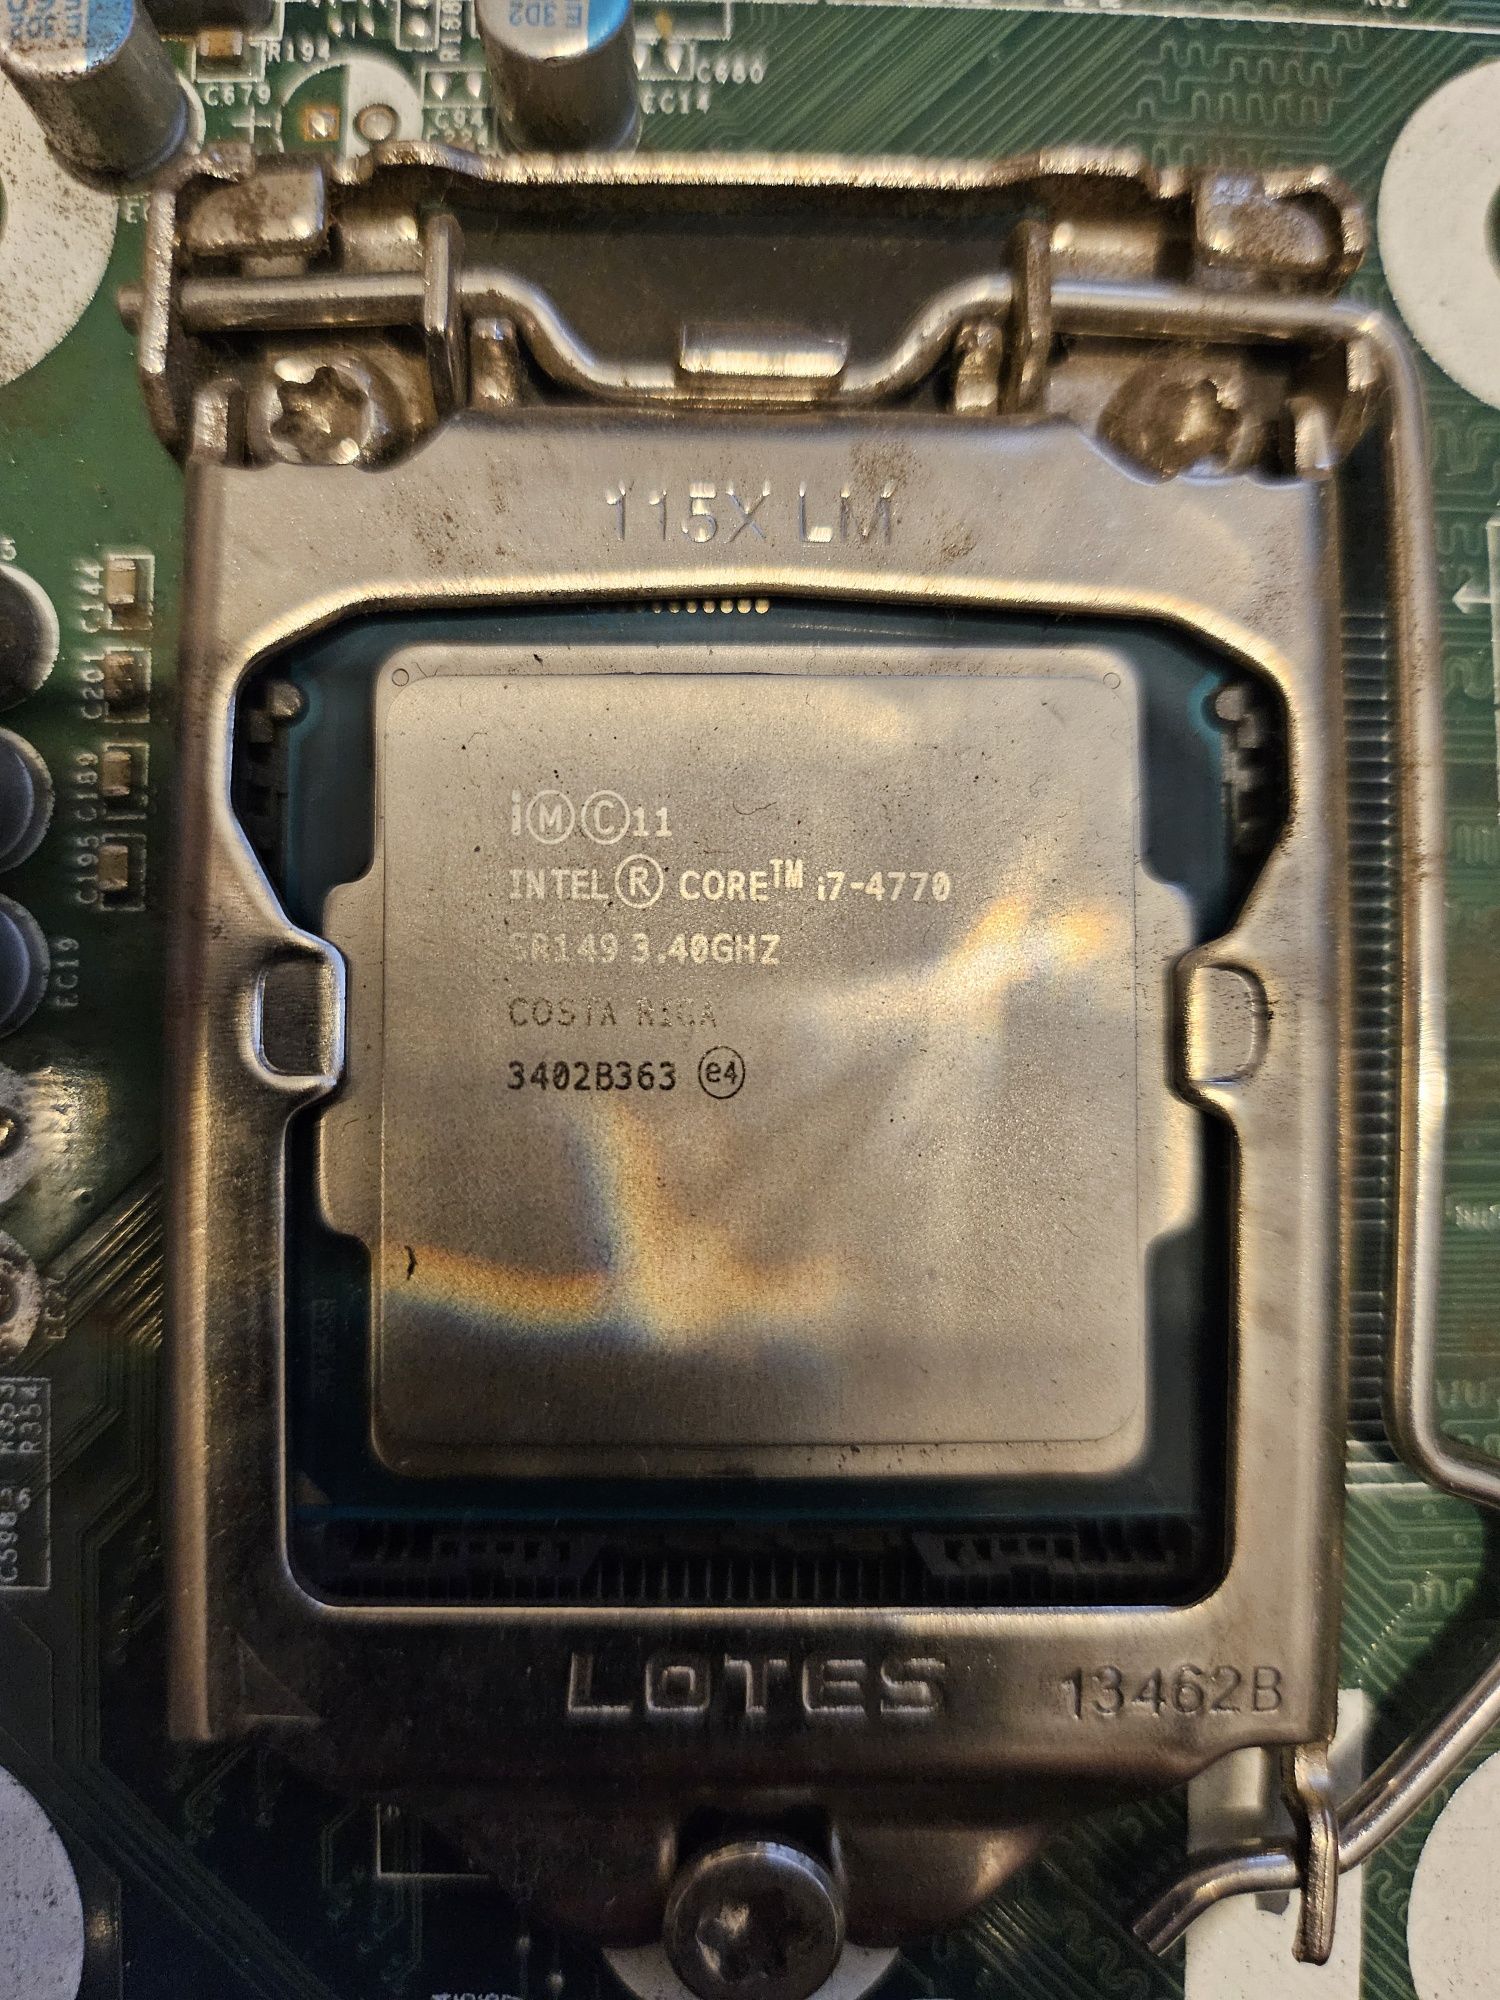 Procesor I7 4770 3.4 GHz wraz z płytą, chłodzeniem, Ramem